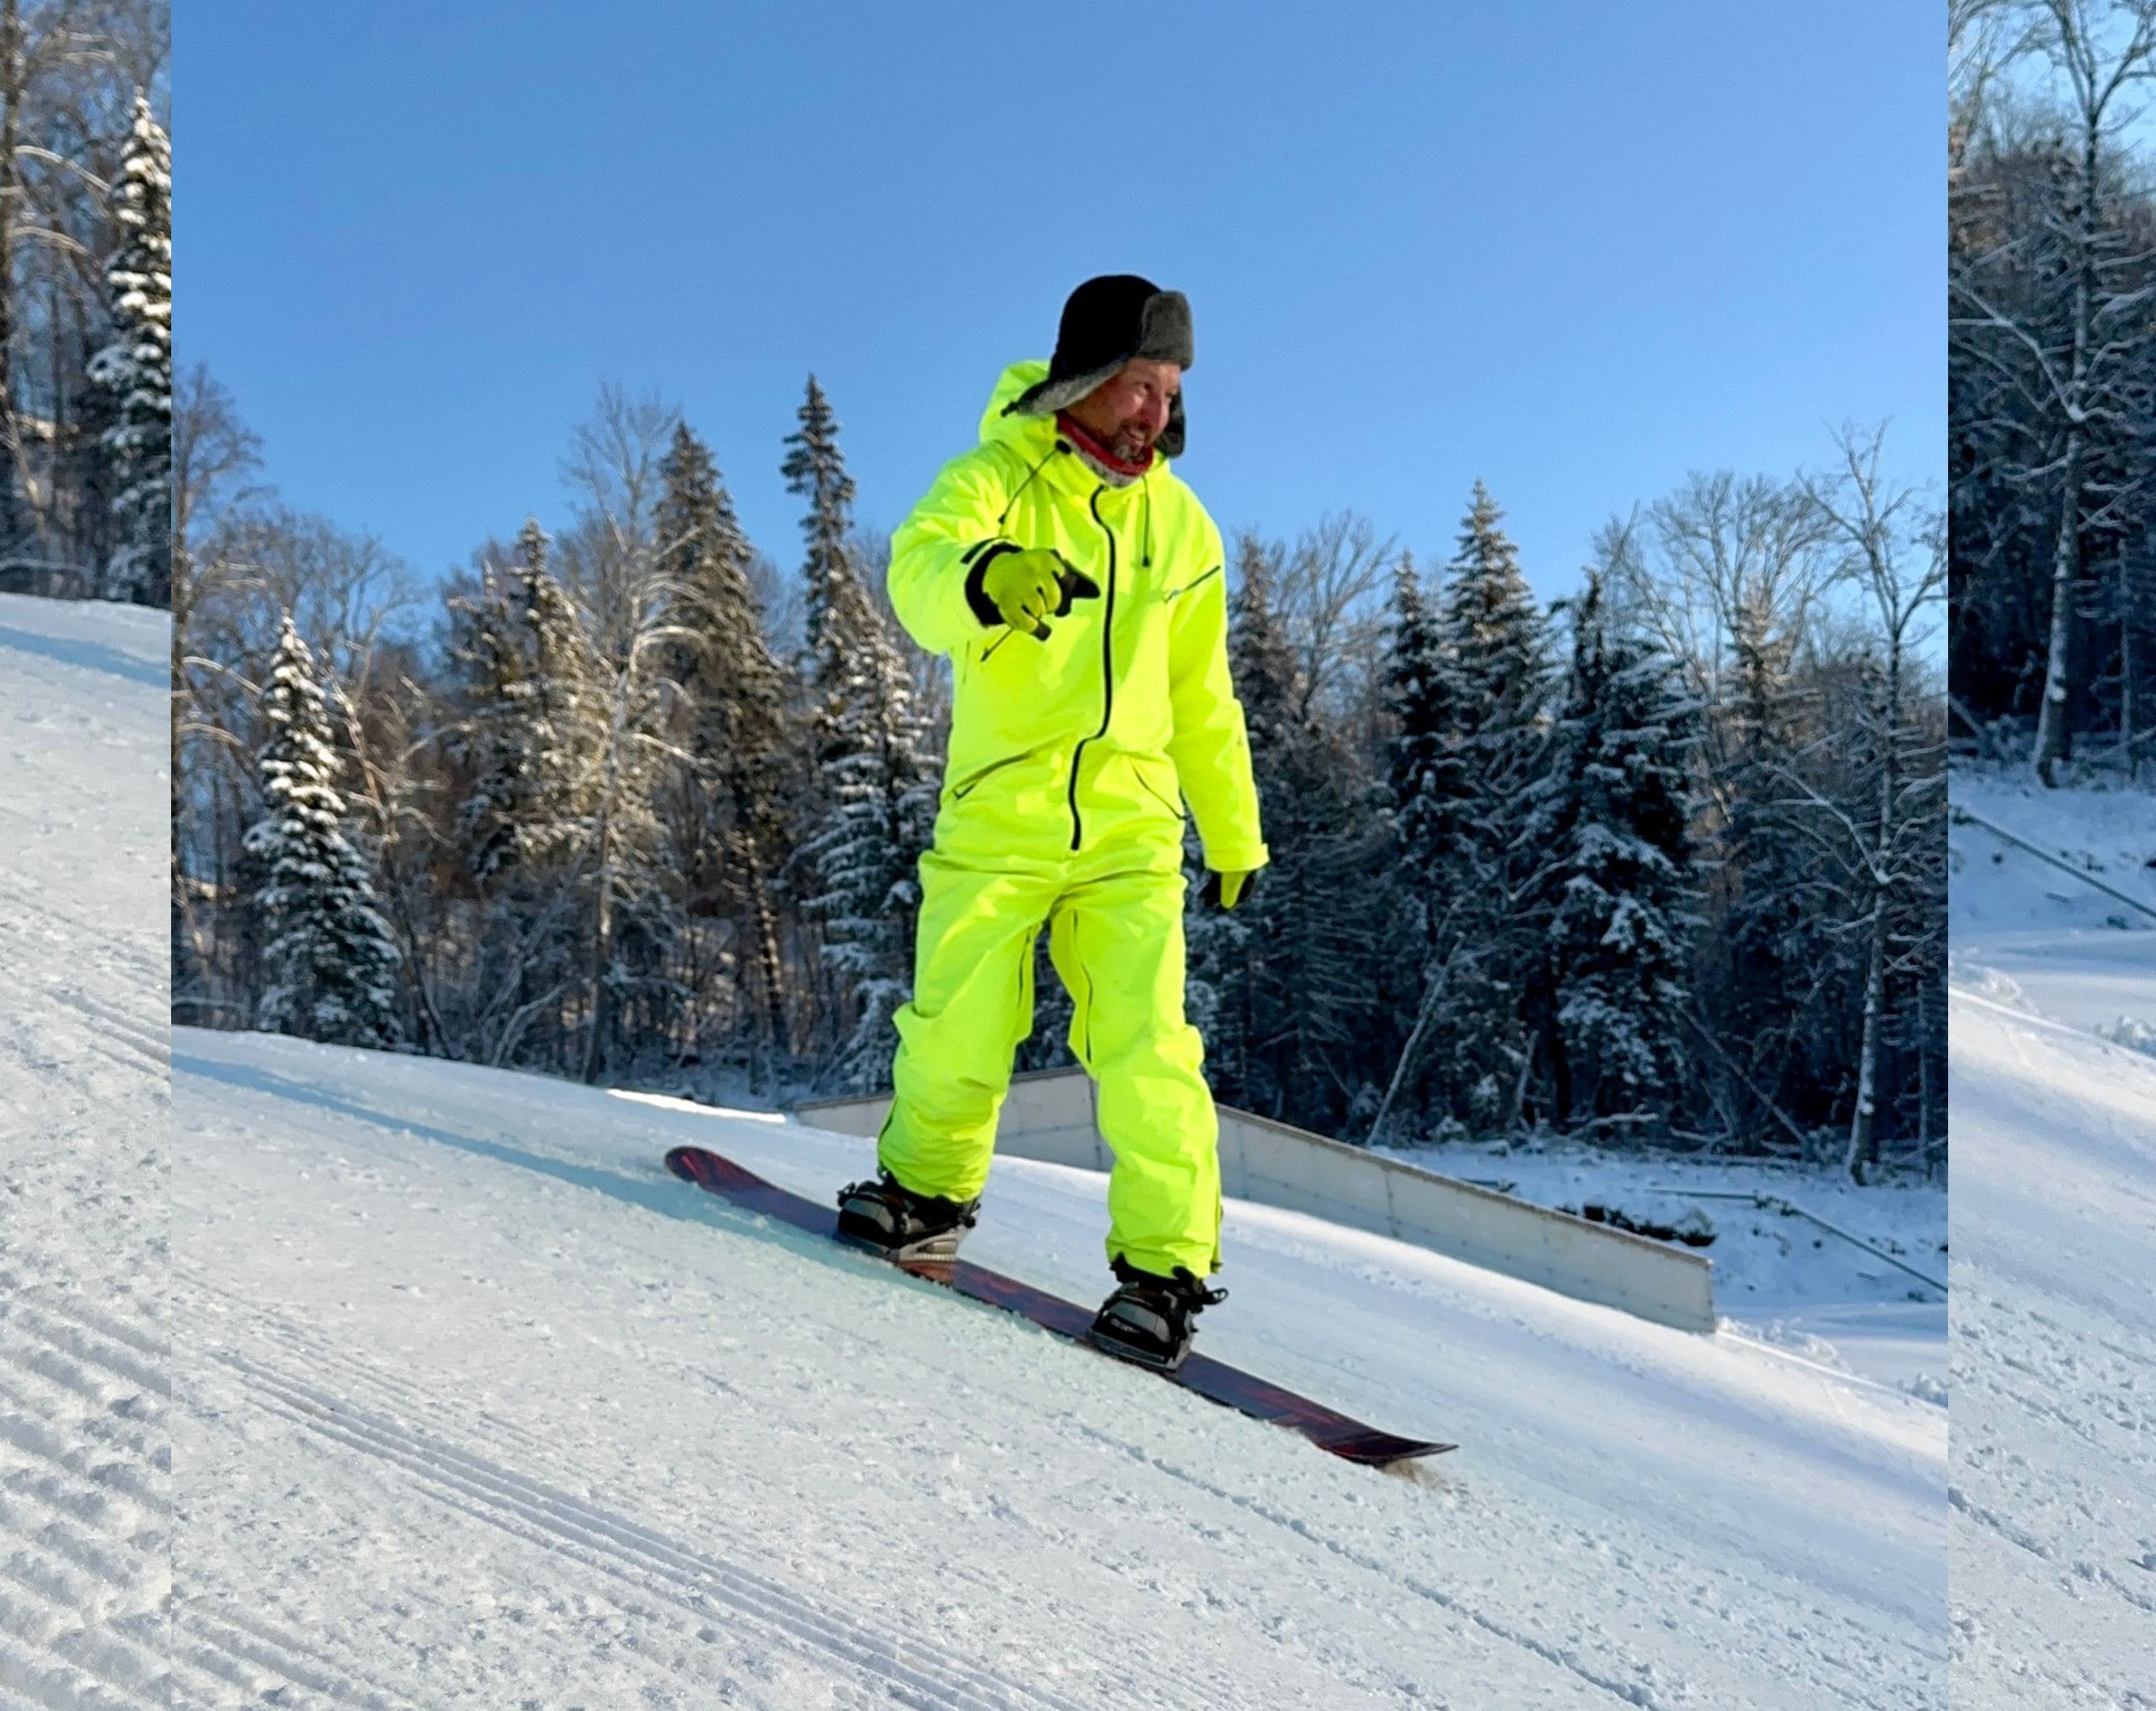 Men's Winter Ski Jumpsuit, Snowboard Clothes, Snowboard Suit, Skiing Overall,  Ski Suit Men, Sportswear, Jumpsuit Winter, Colorful Snow Suit -  Norway